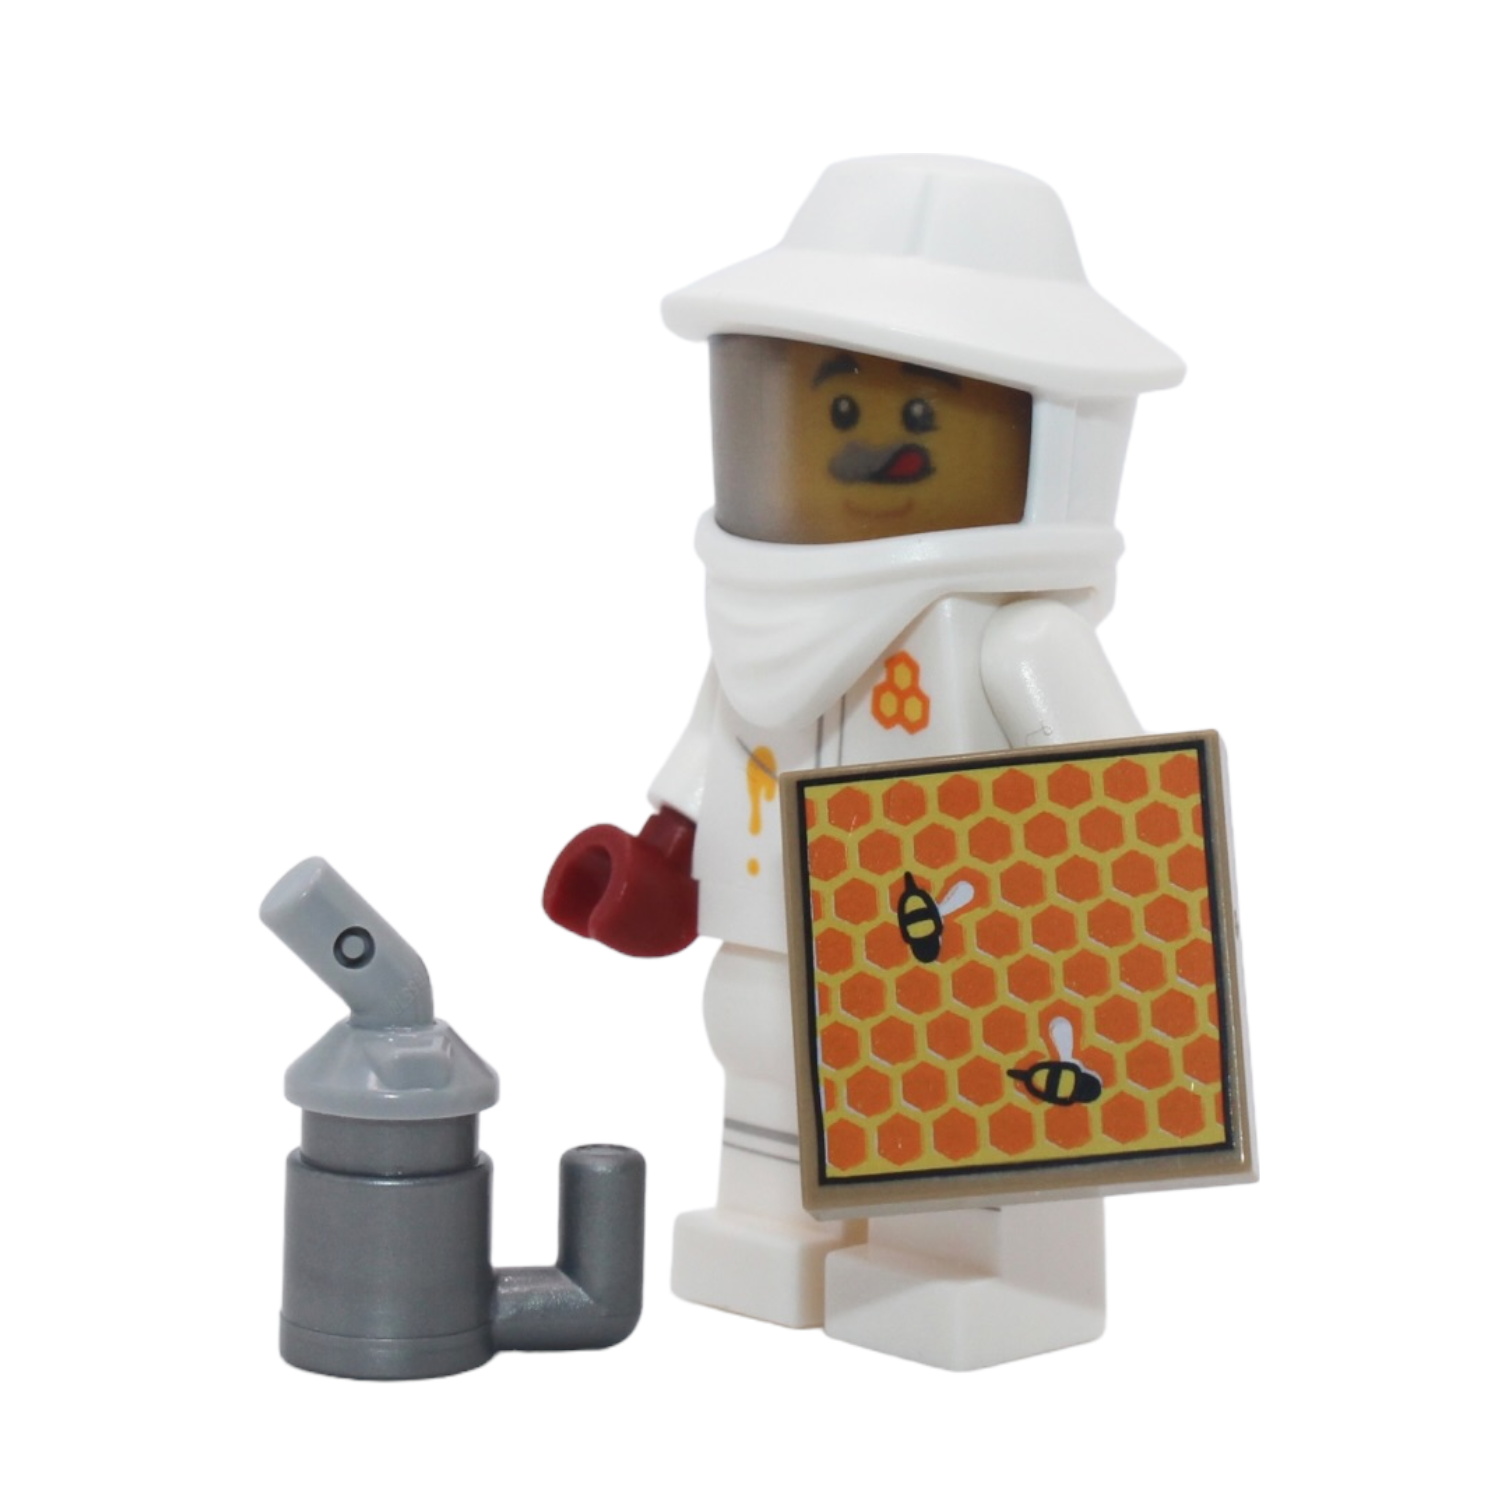 LEGO Series 21: Beekeeper